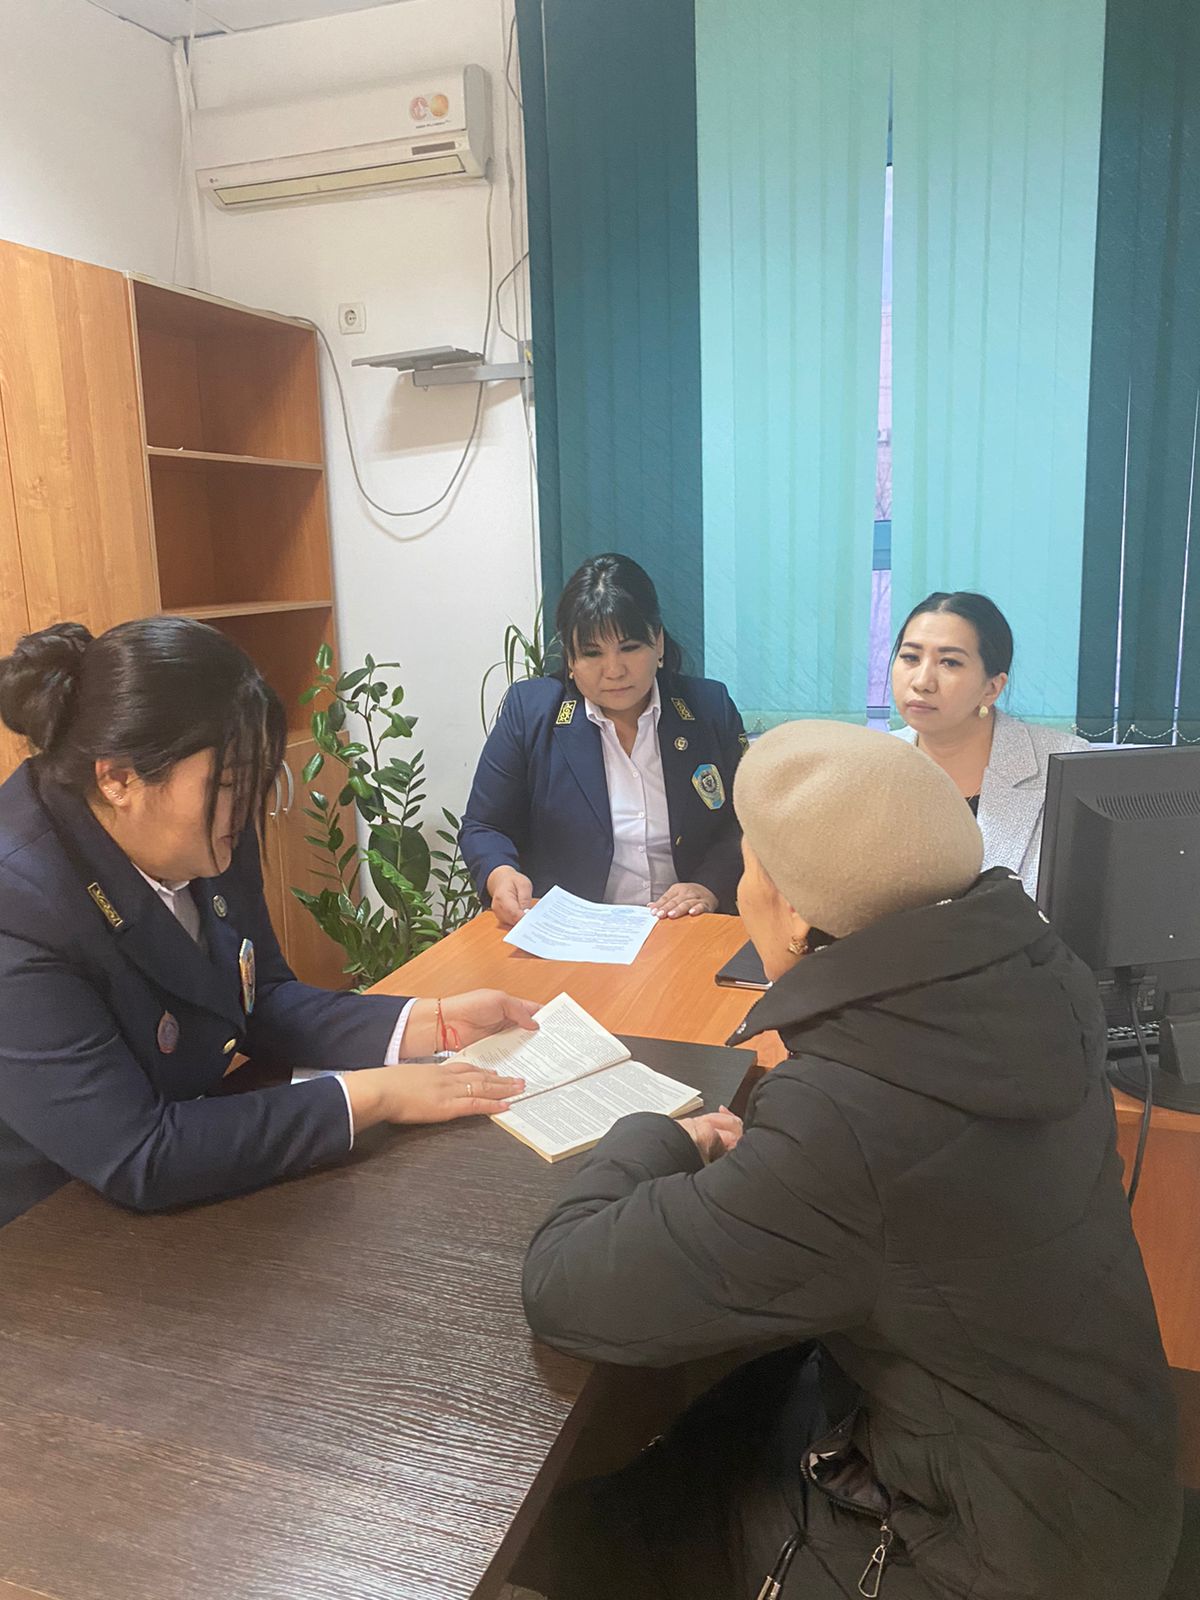 В региональной палате частных судебных исполнителей Кызылординской области прошел День открытых дверей с участием адвокатов